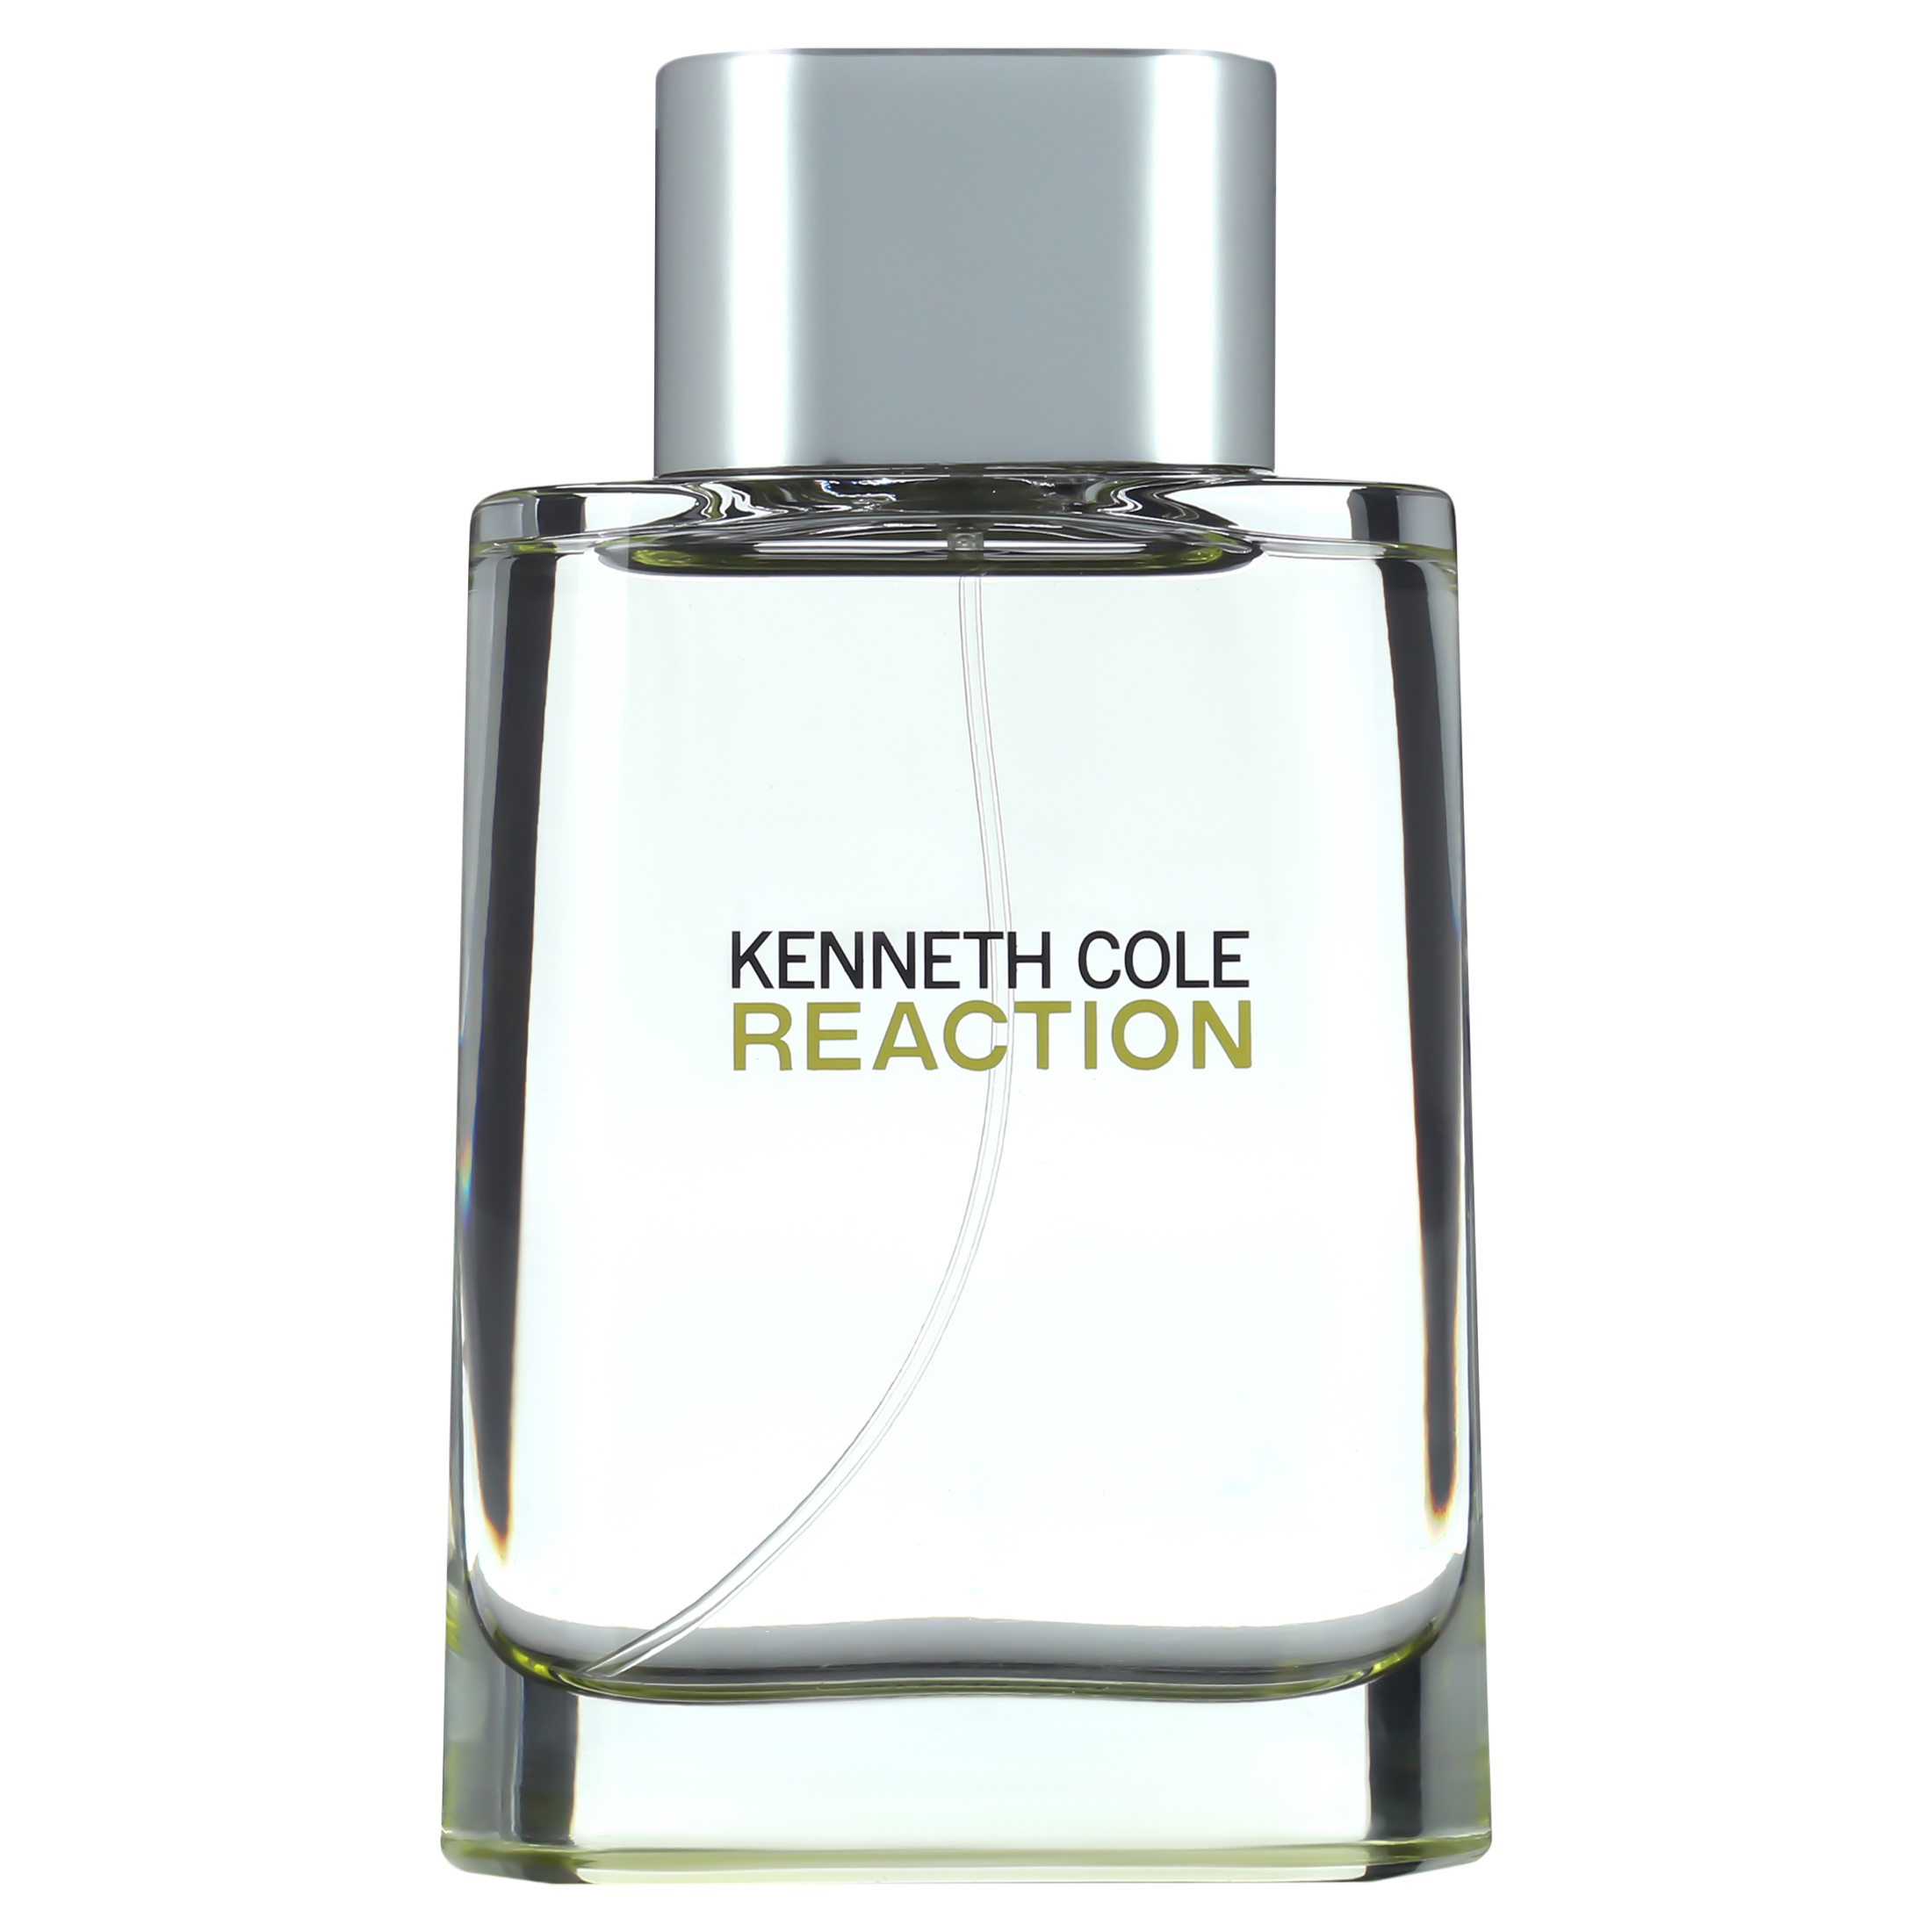 Kenenth Cole Reaction Eau de Toilette, Cologne for Men, 3.4 oz - image 5 of 6